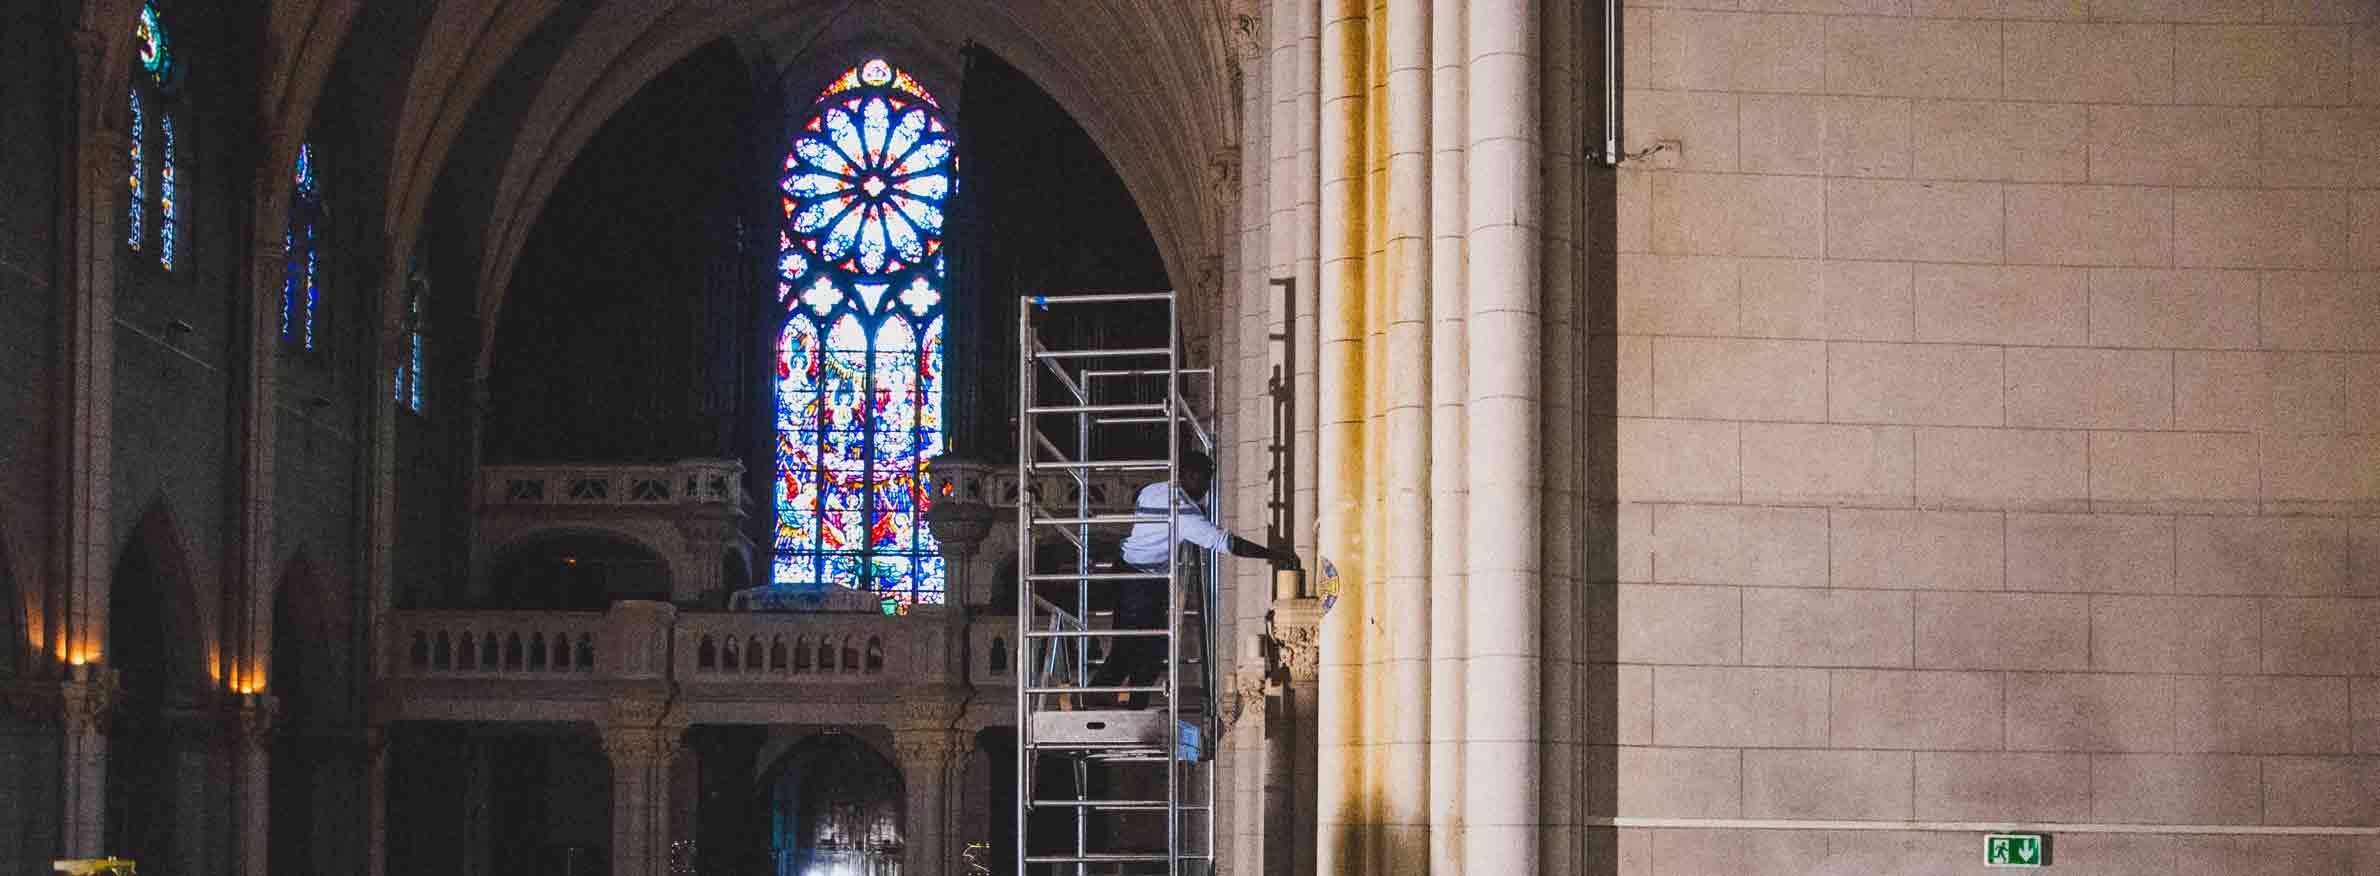 Chantier de rénovation d'une chapelle, un ouvrier change une lampe en hauteur.